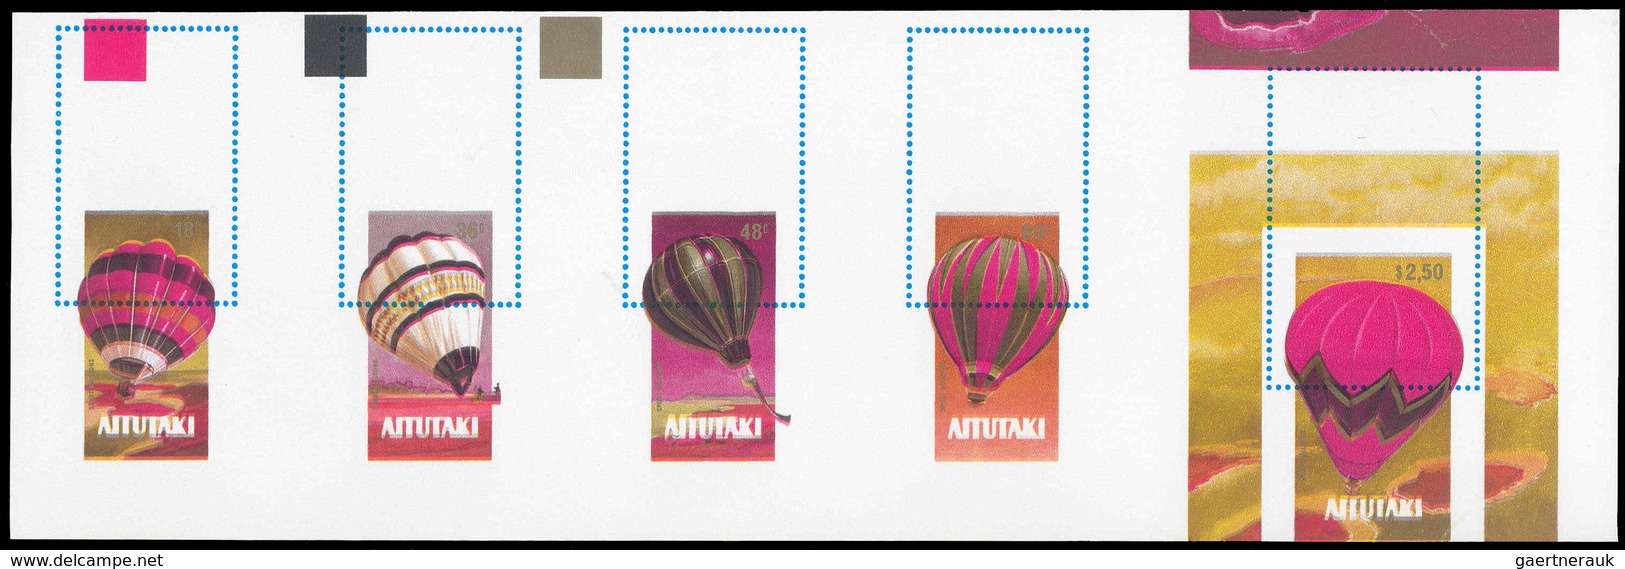 10172 Thematik: Ballon-Luftfahrt / Balloon-aviation: 1983, Aitutaki: 200th ANNIVERSARY OF BALLOONING, Hot- - Bäume